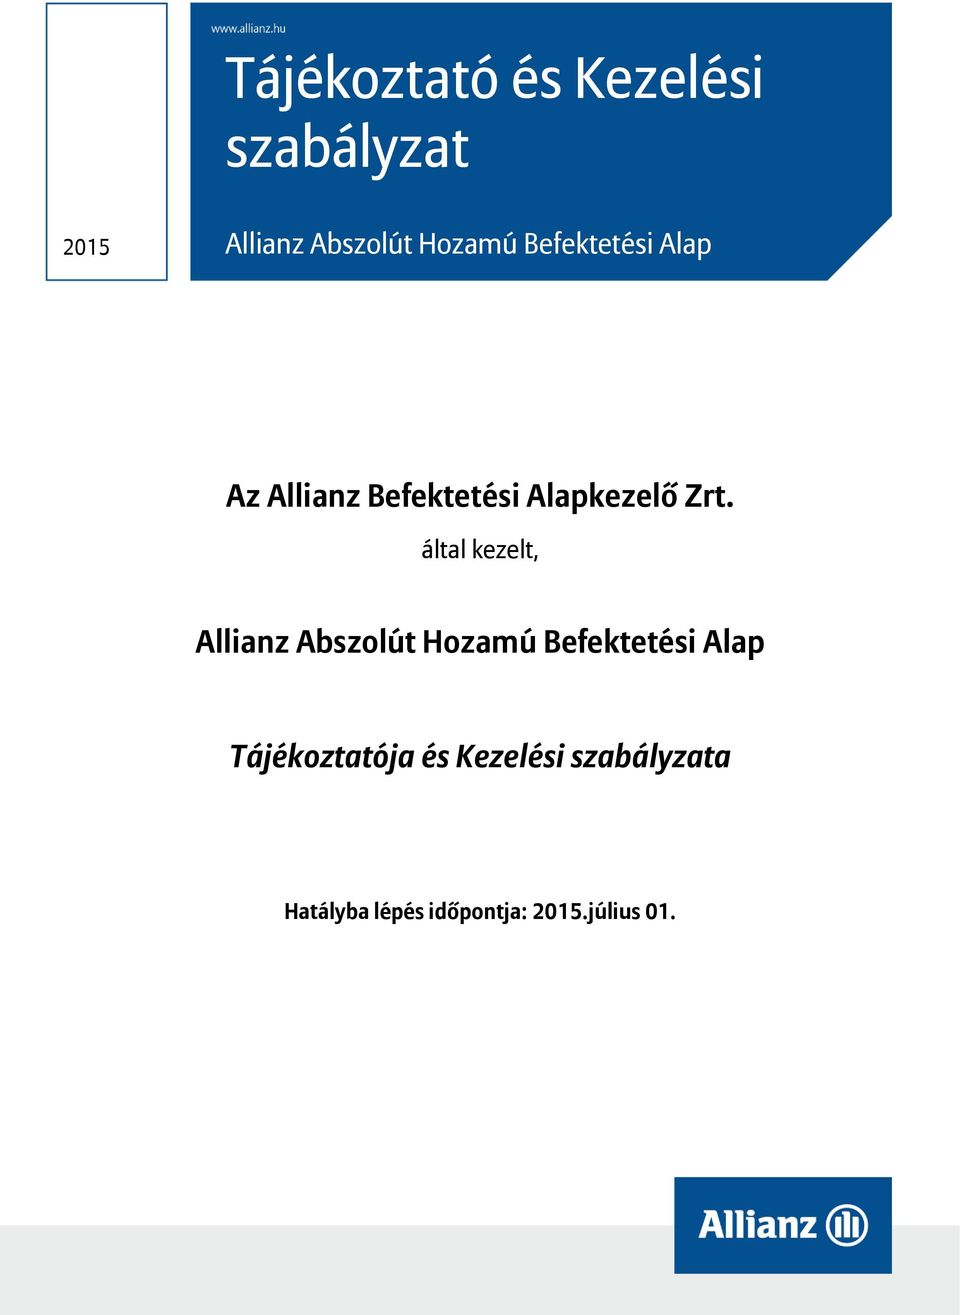 által kezelt, Allianz Abszolút Hozamú Befektetési Alap